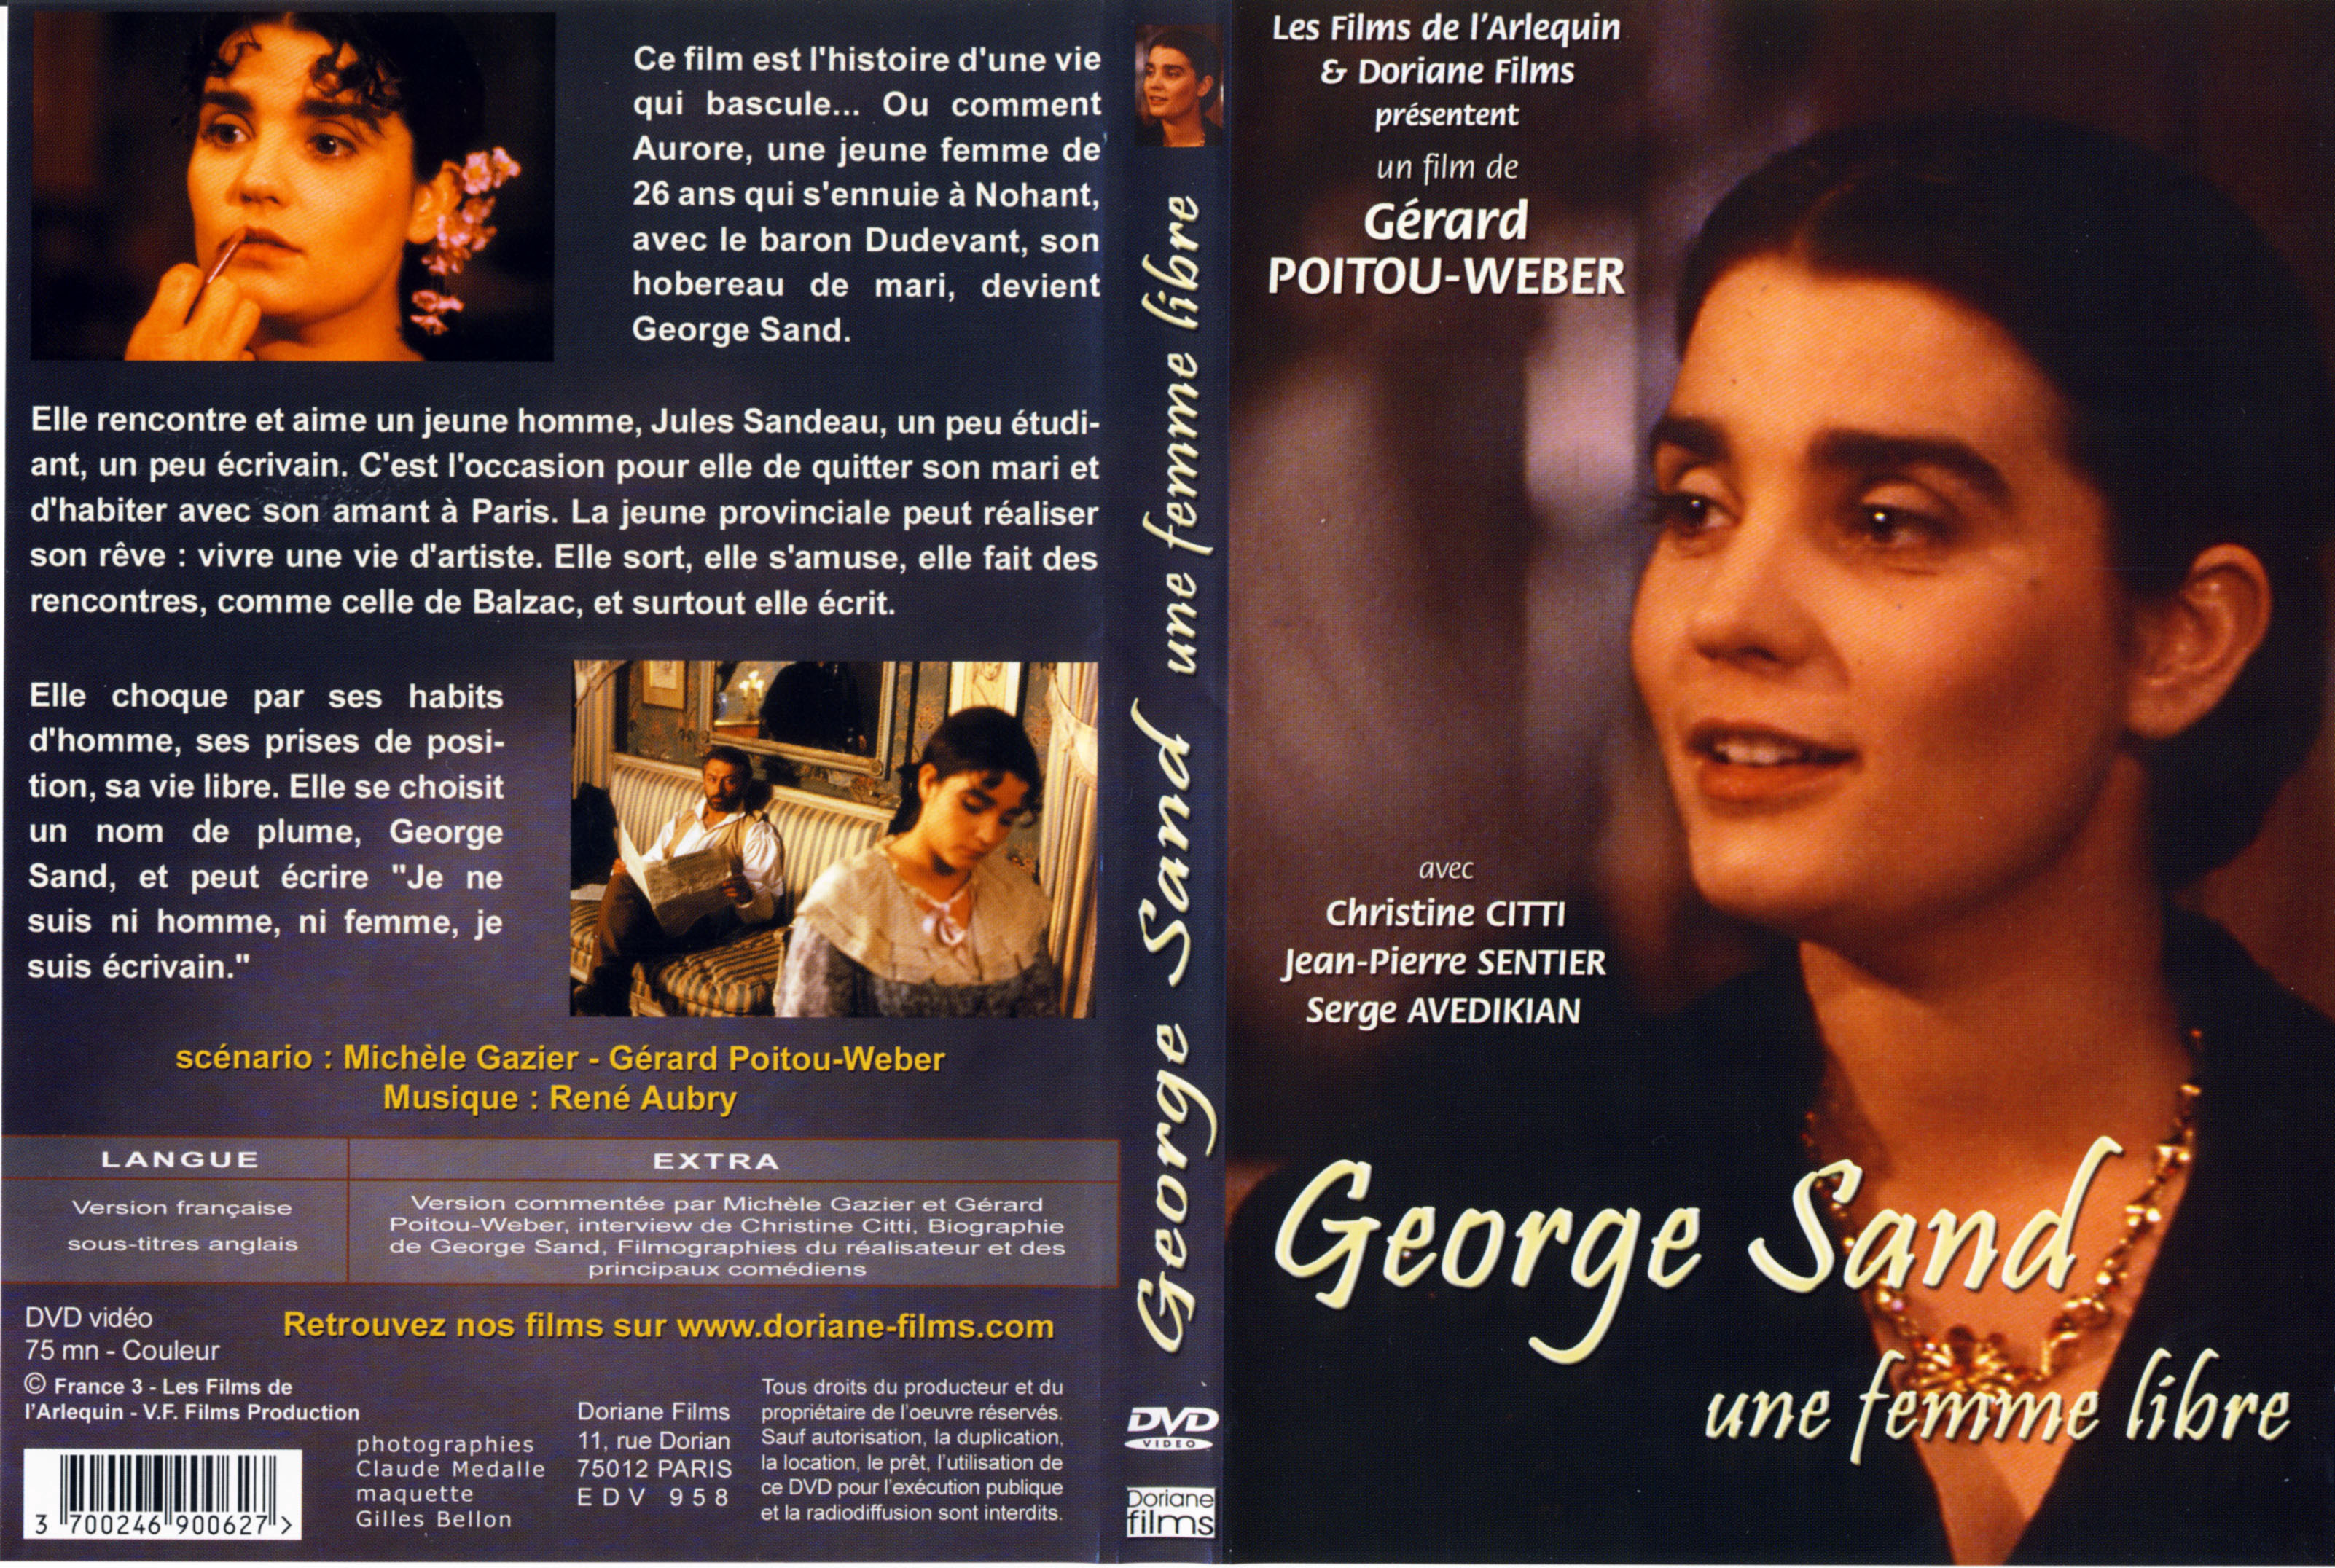 Jaquette DVD George Sand une femme libre